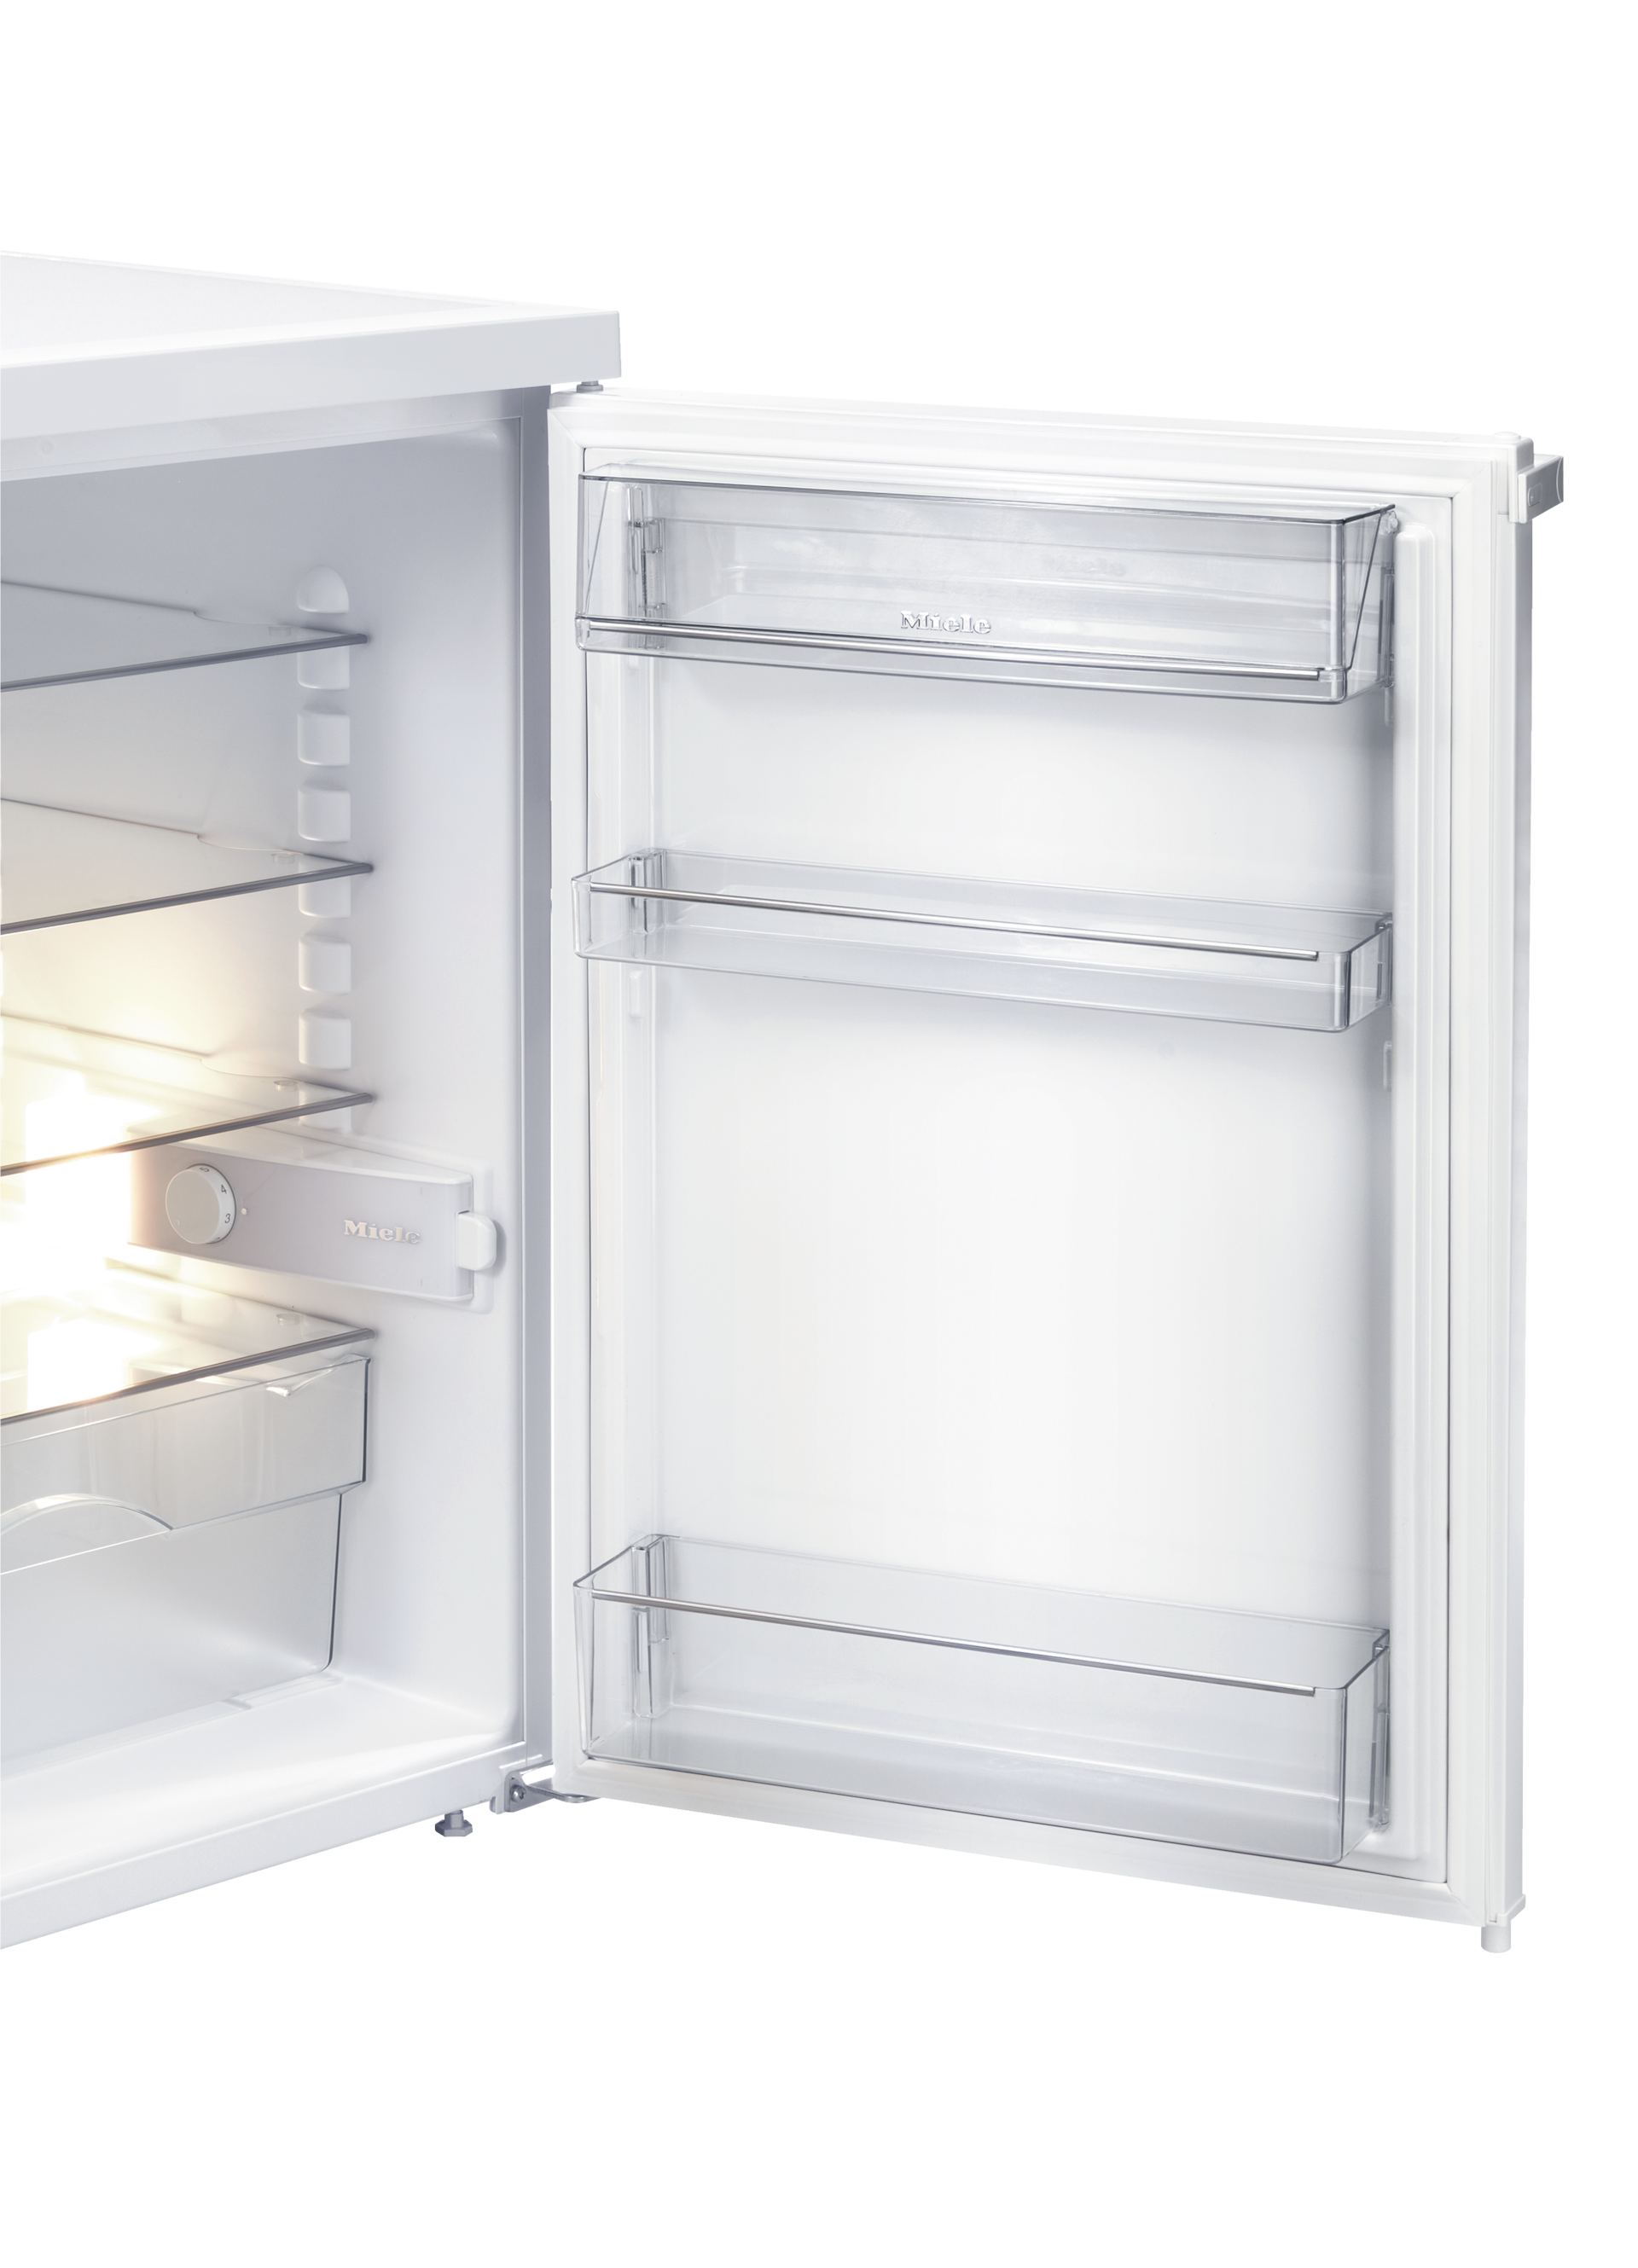 Refrigeration - K 12010 S-2 White - 4